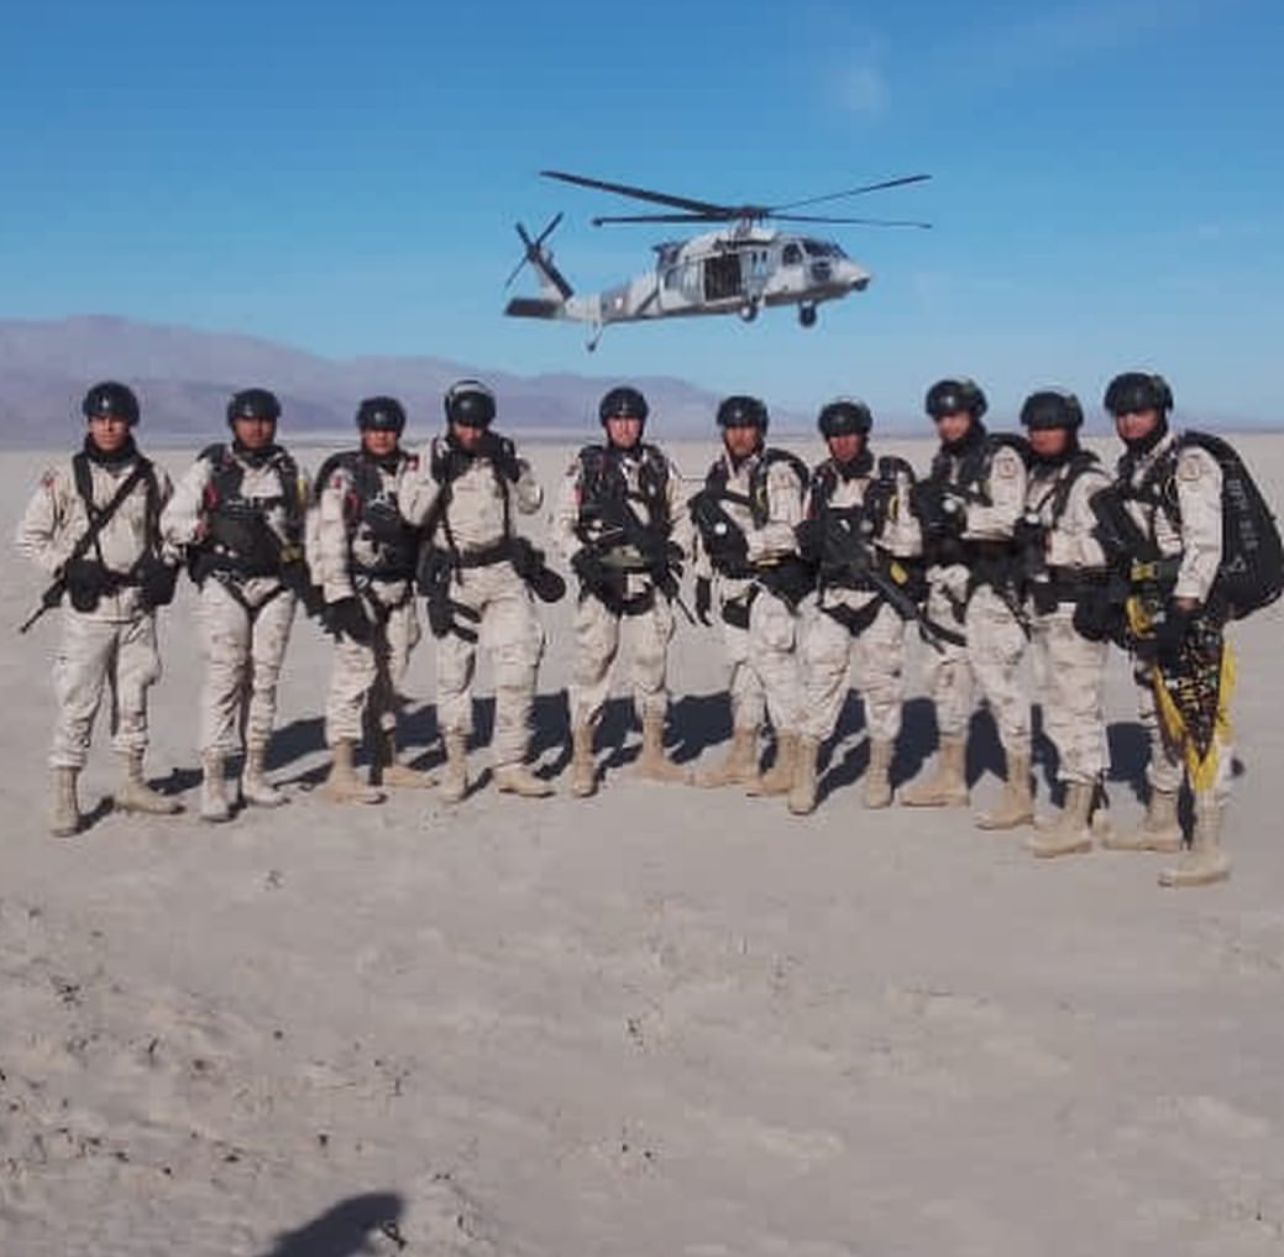 Operaciones aeromóviles en en el Ejército Mexicano. Desierto de Laguna Salada, B.C.